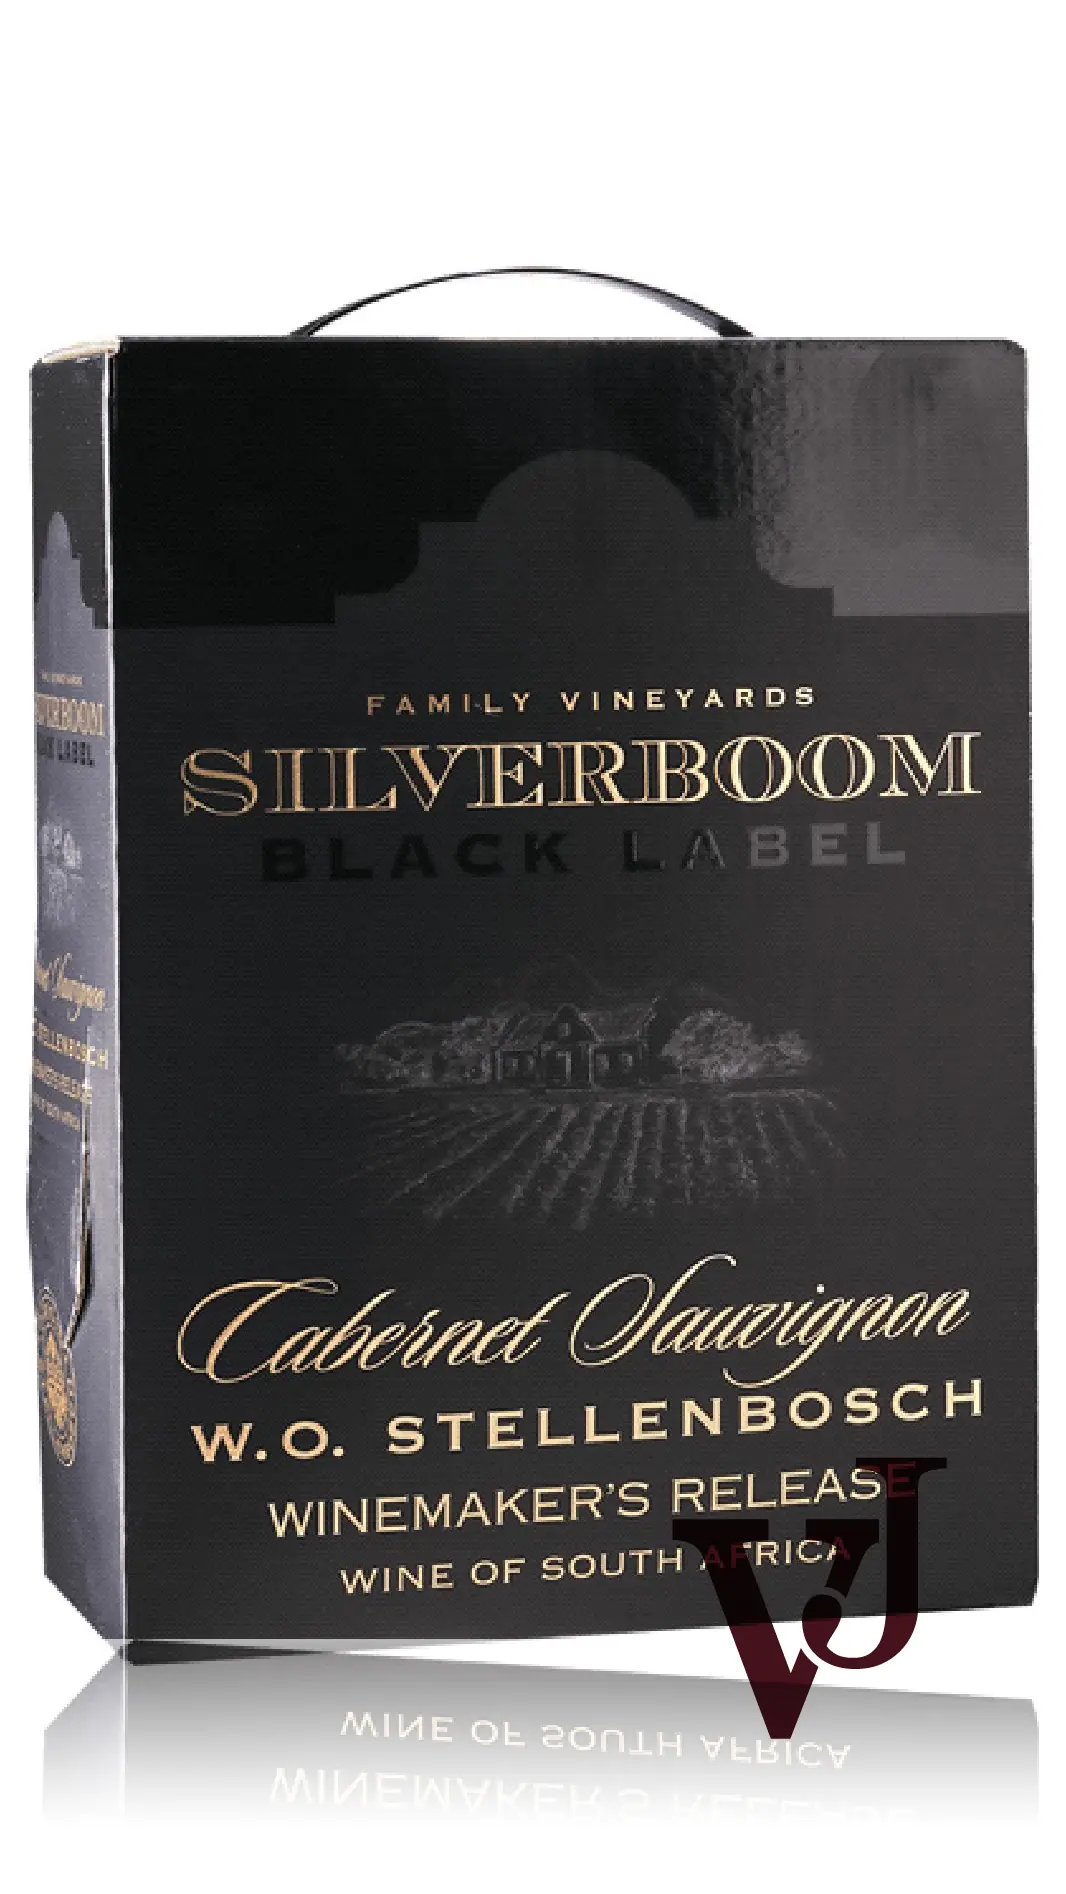 Rött vin - Silverboom Black Label 2020 artikel nummer 7219908 från producenten Taster Wine från Sydafrika - Vinjournalen.se